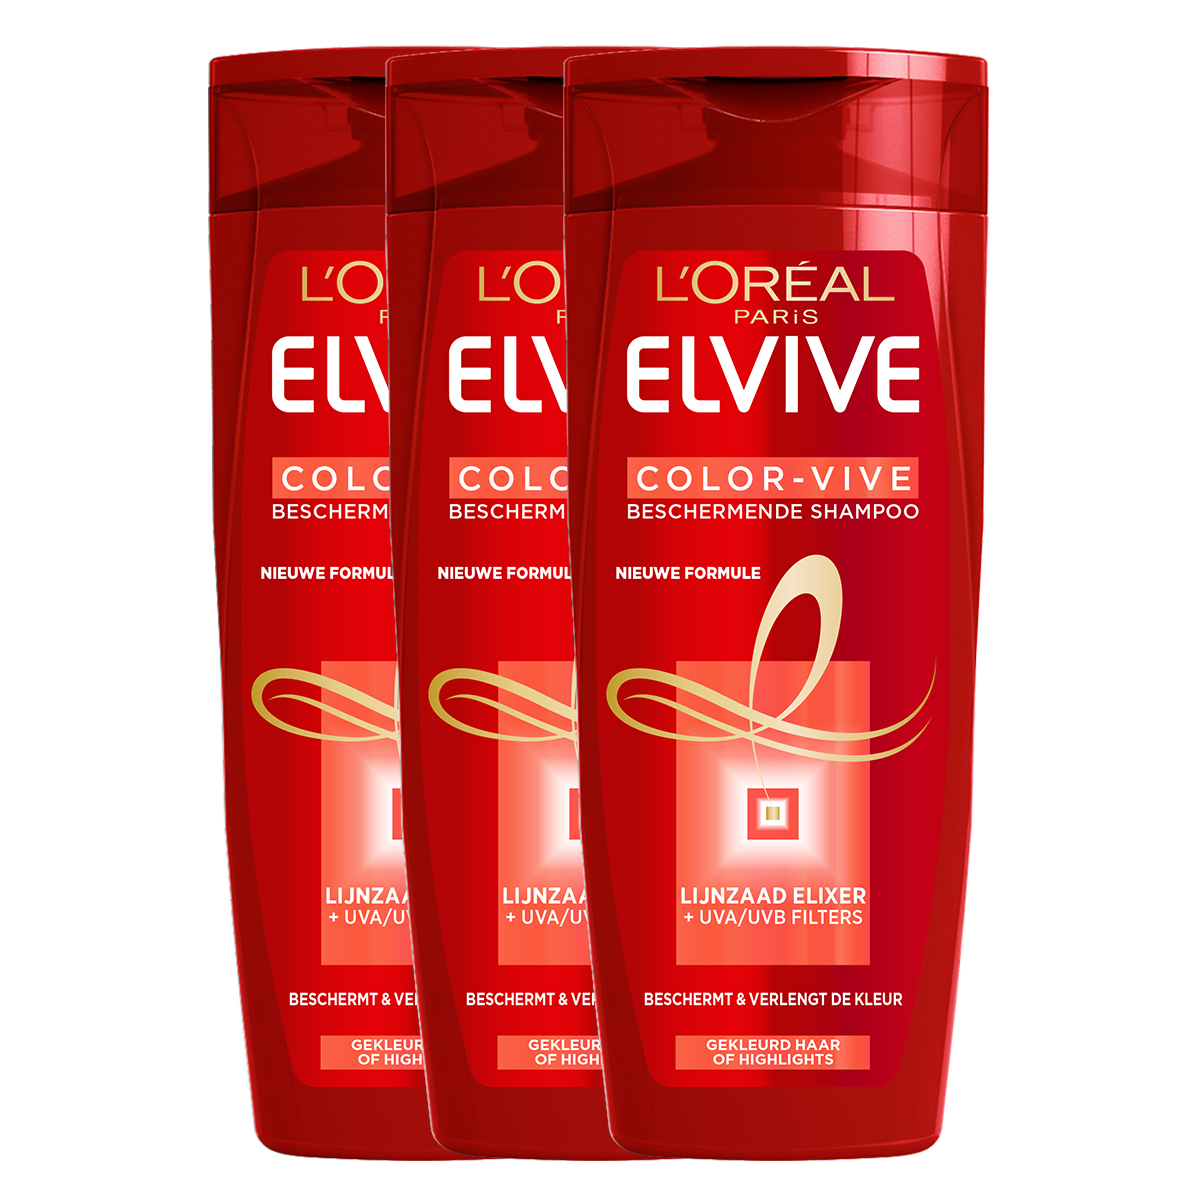 L'Oréal Elvive Color Vive Beschermende Shampoo - 3 x 250 ml - Voordeelverpakking - Gekleurd Haar